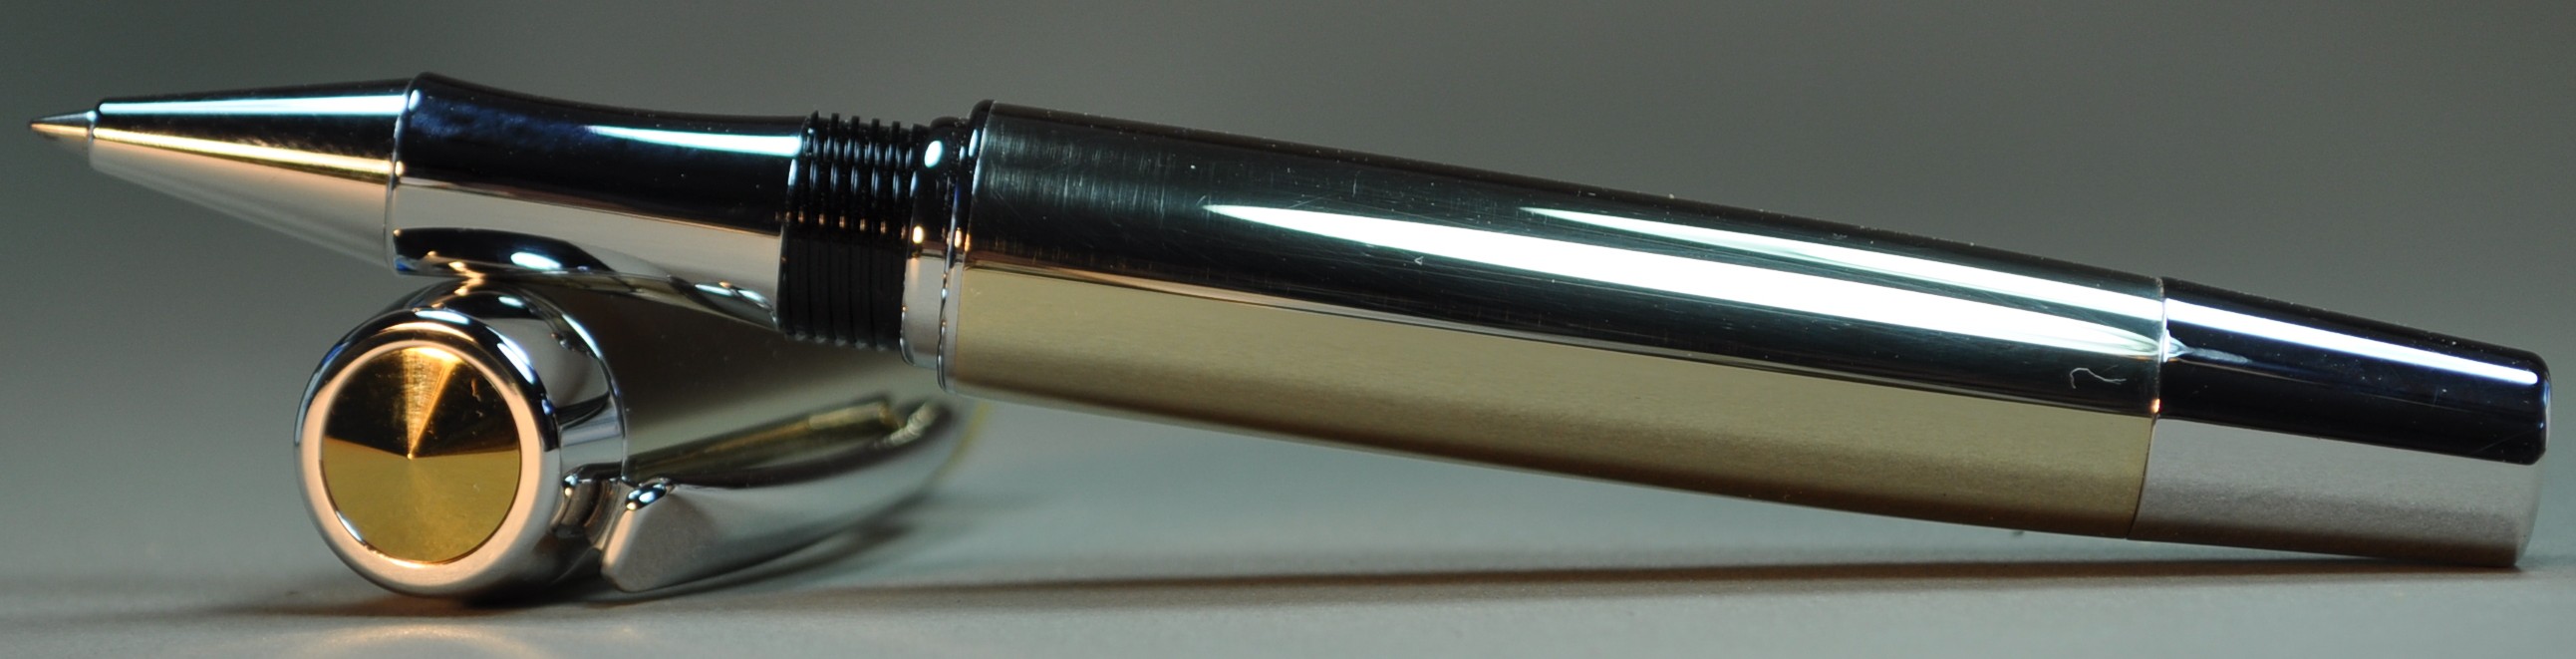 Gentlemen's Pen in Aluminium Bronze Alloy